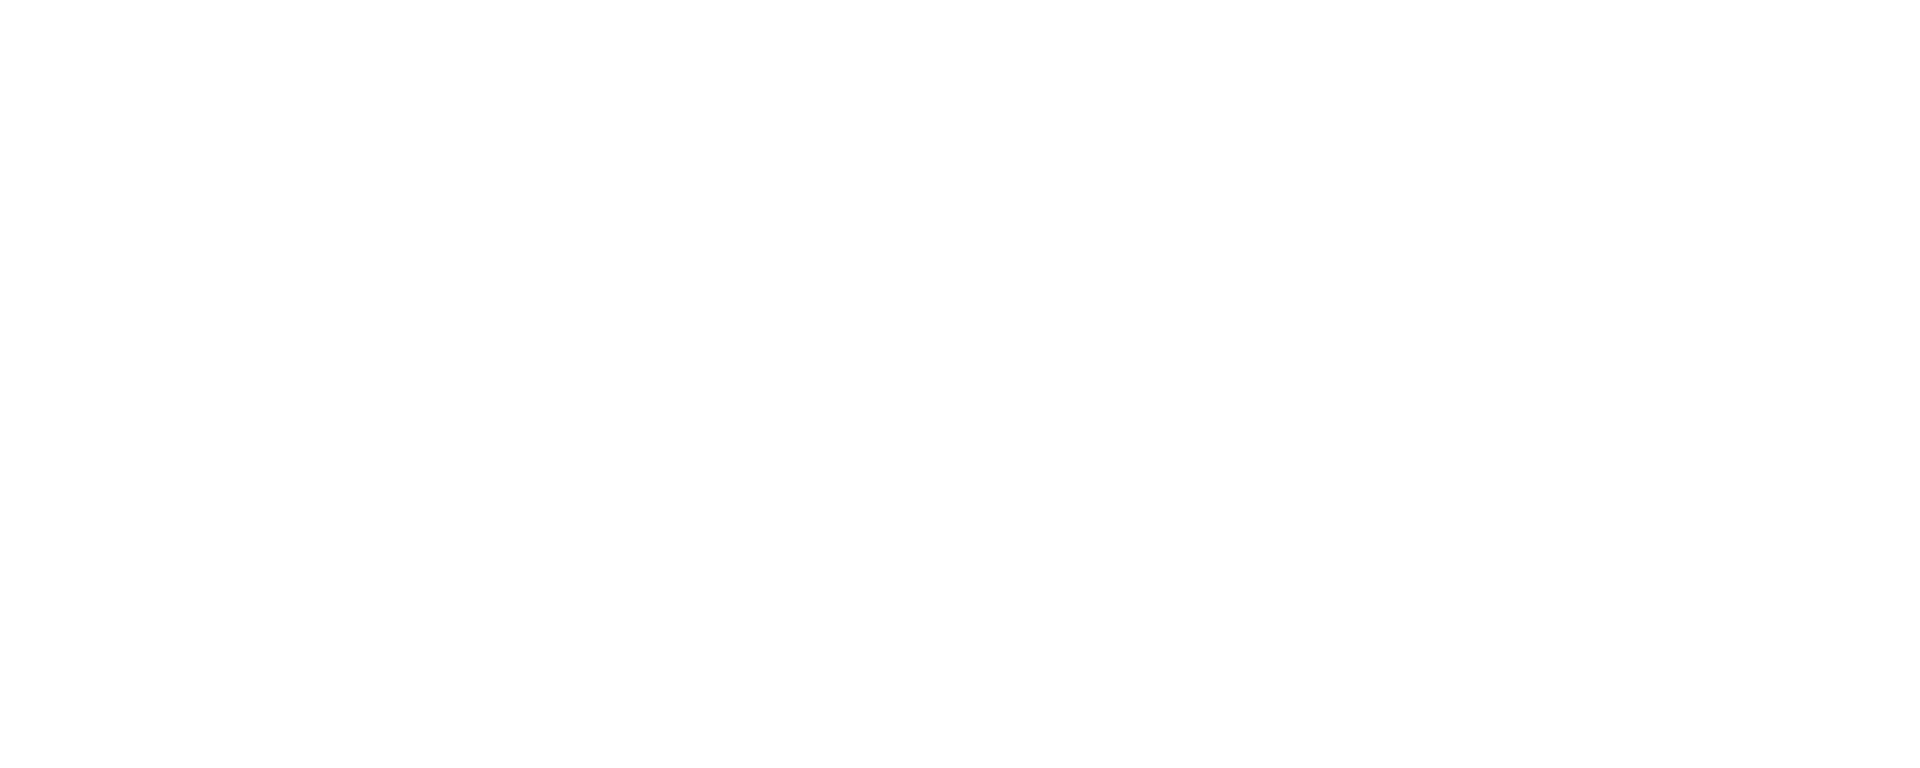 highwayapostles